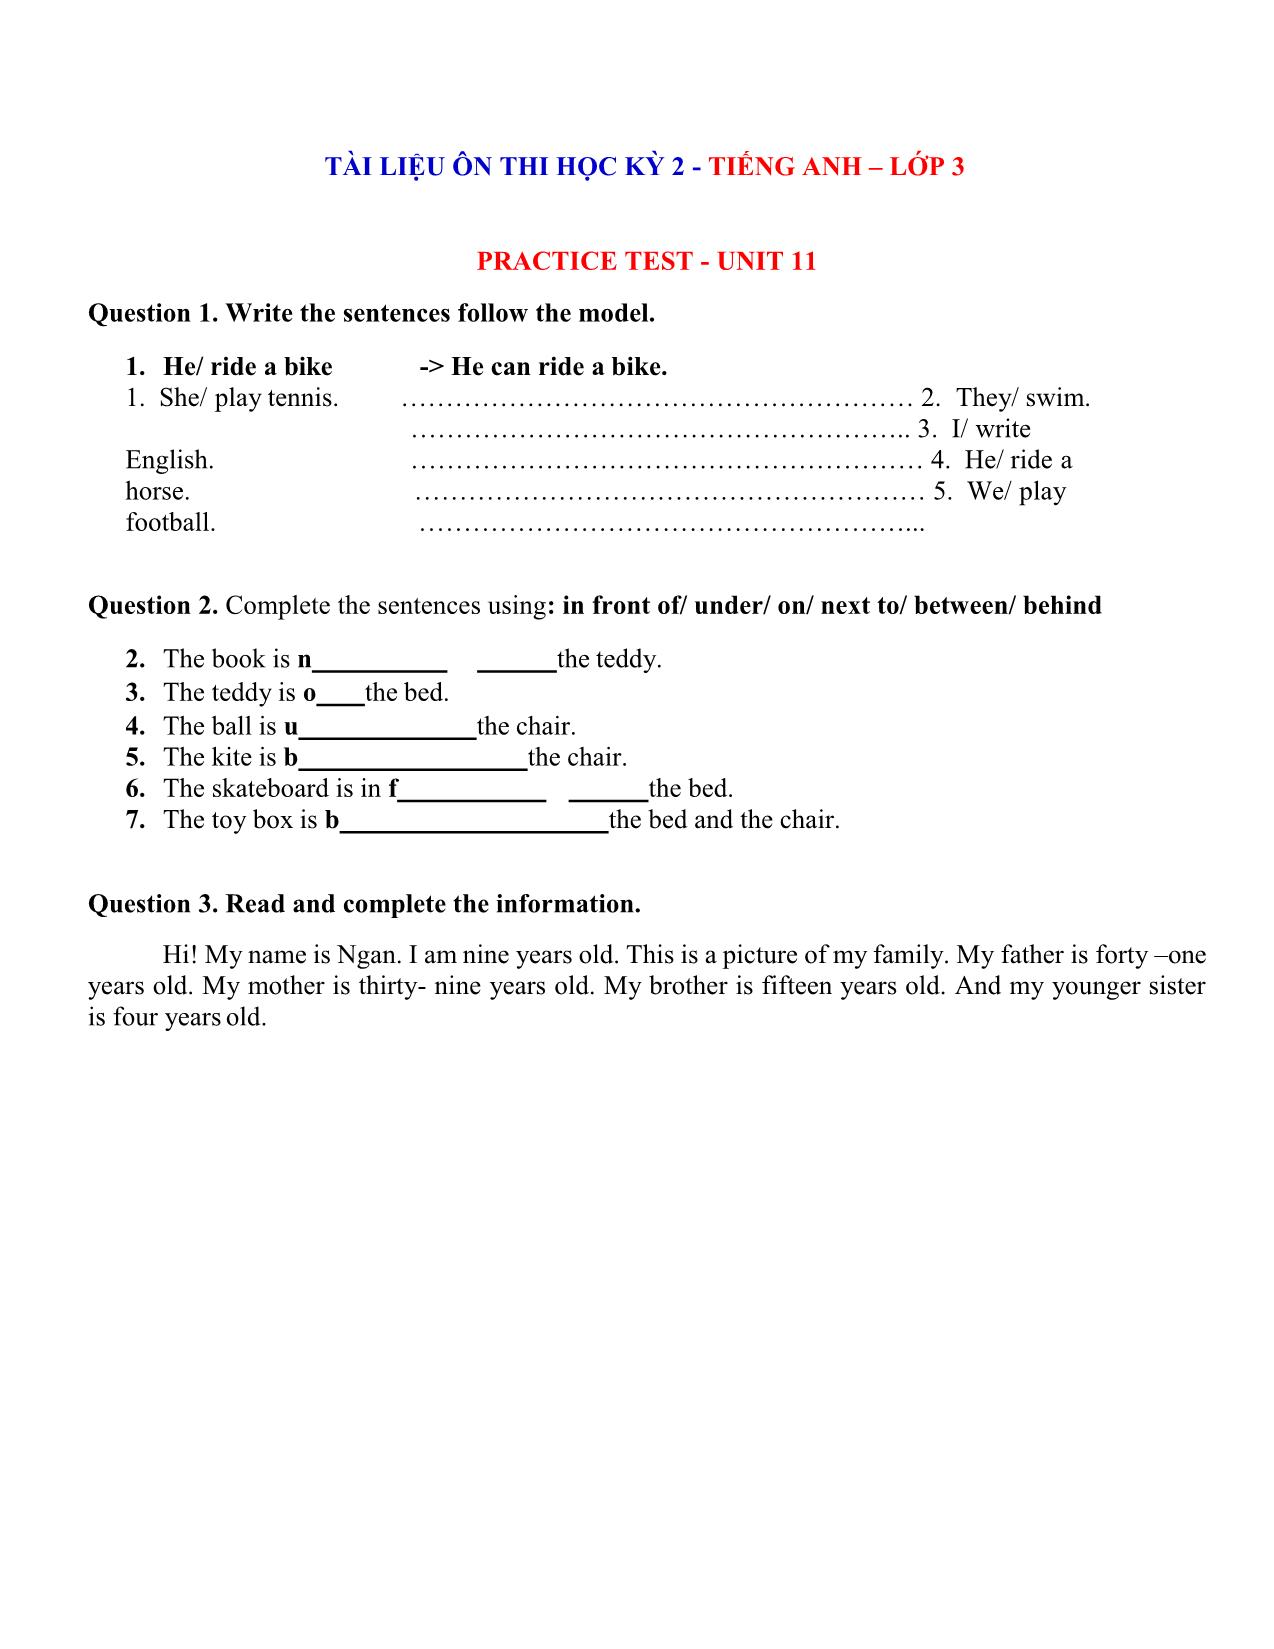 Tài liệu ôn thi học kỳ 2 - Tiếng Anh lớp 3 trang 1